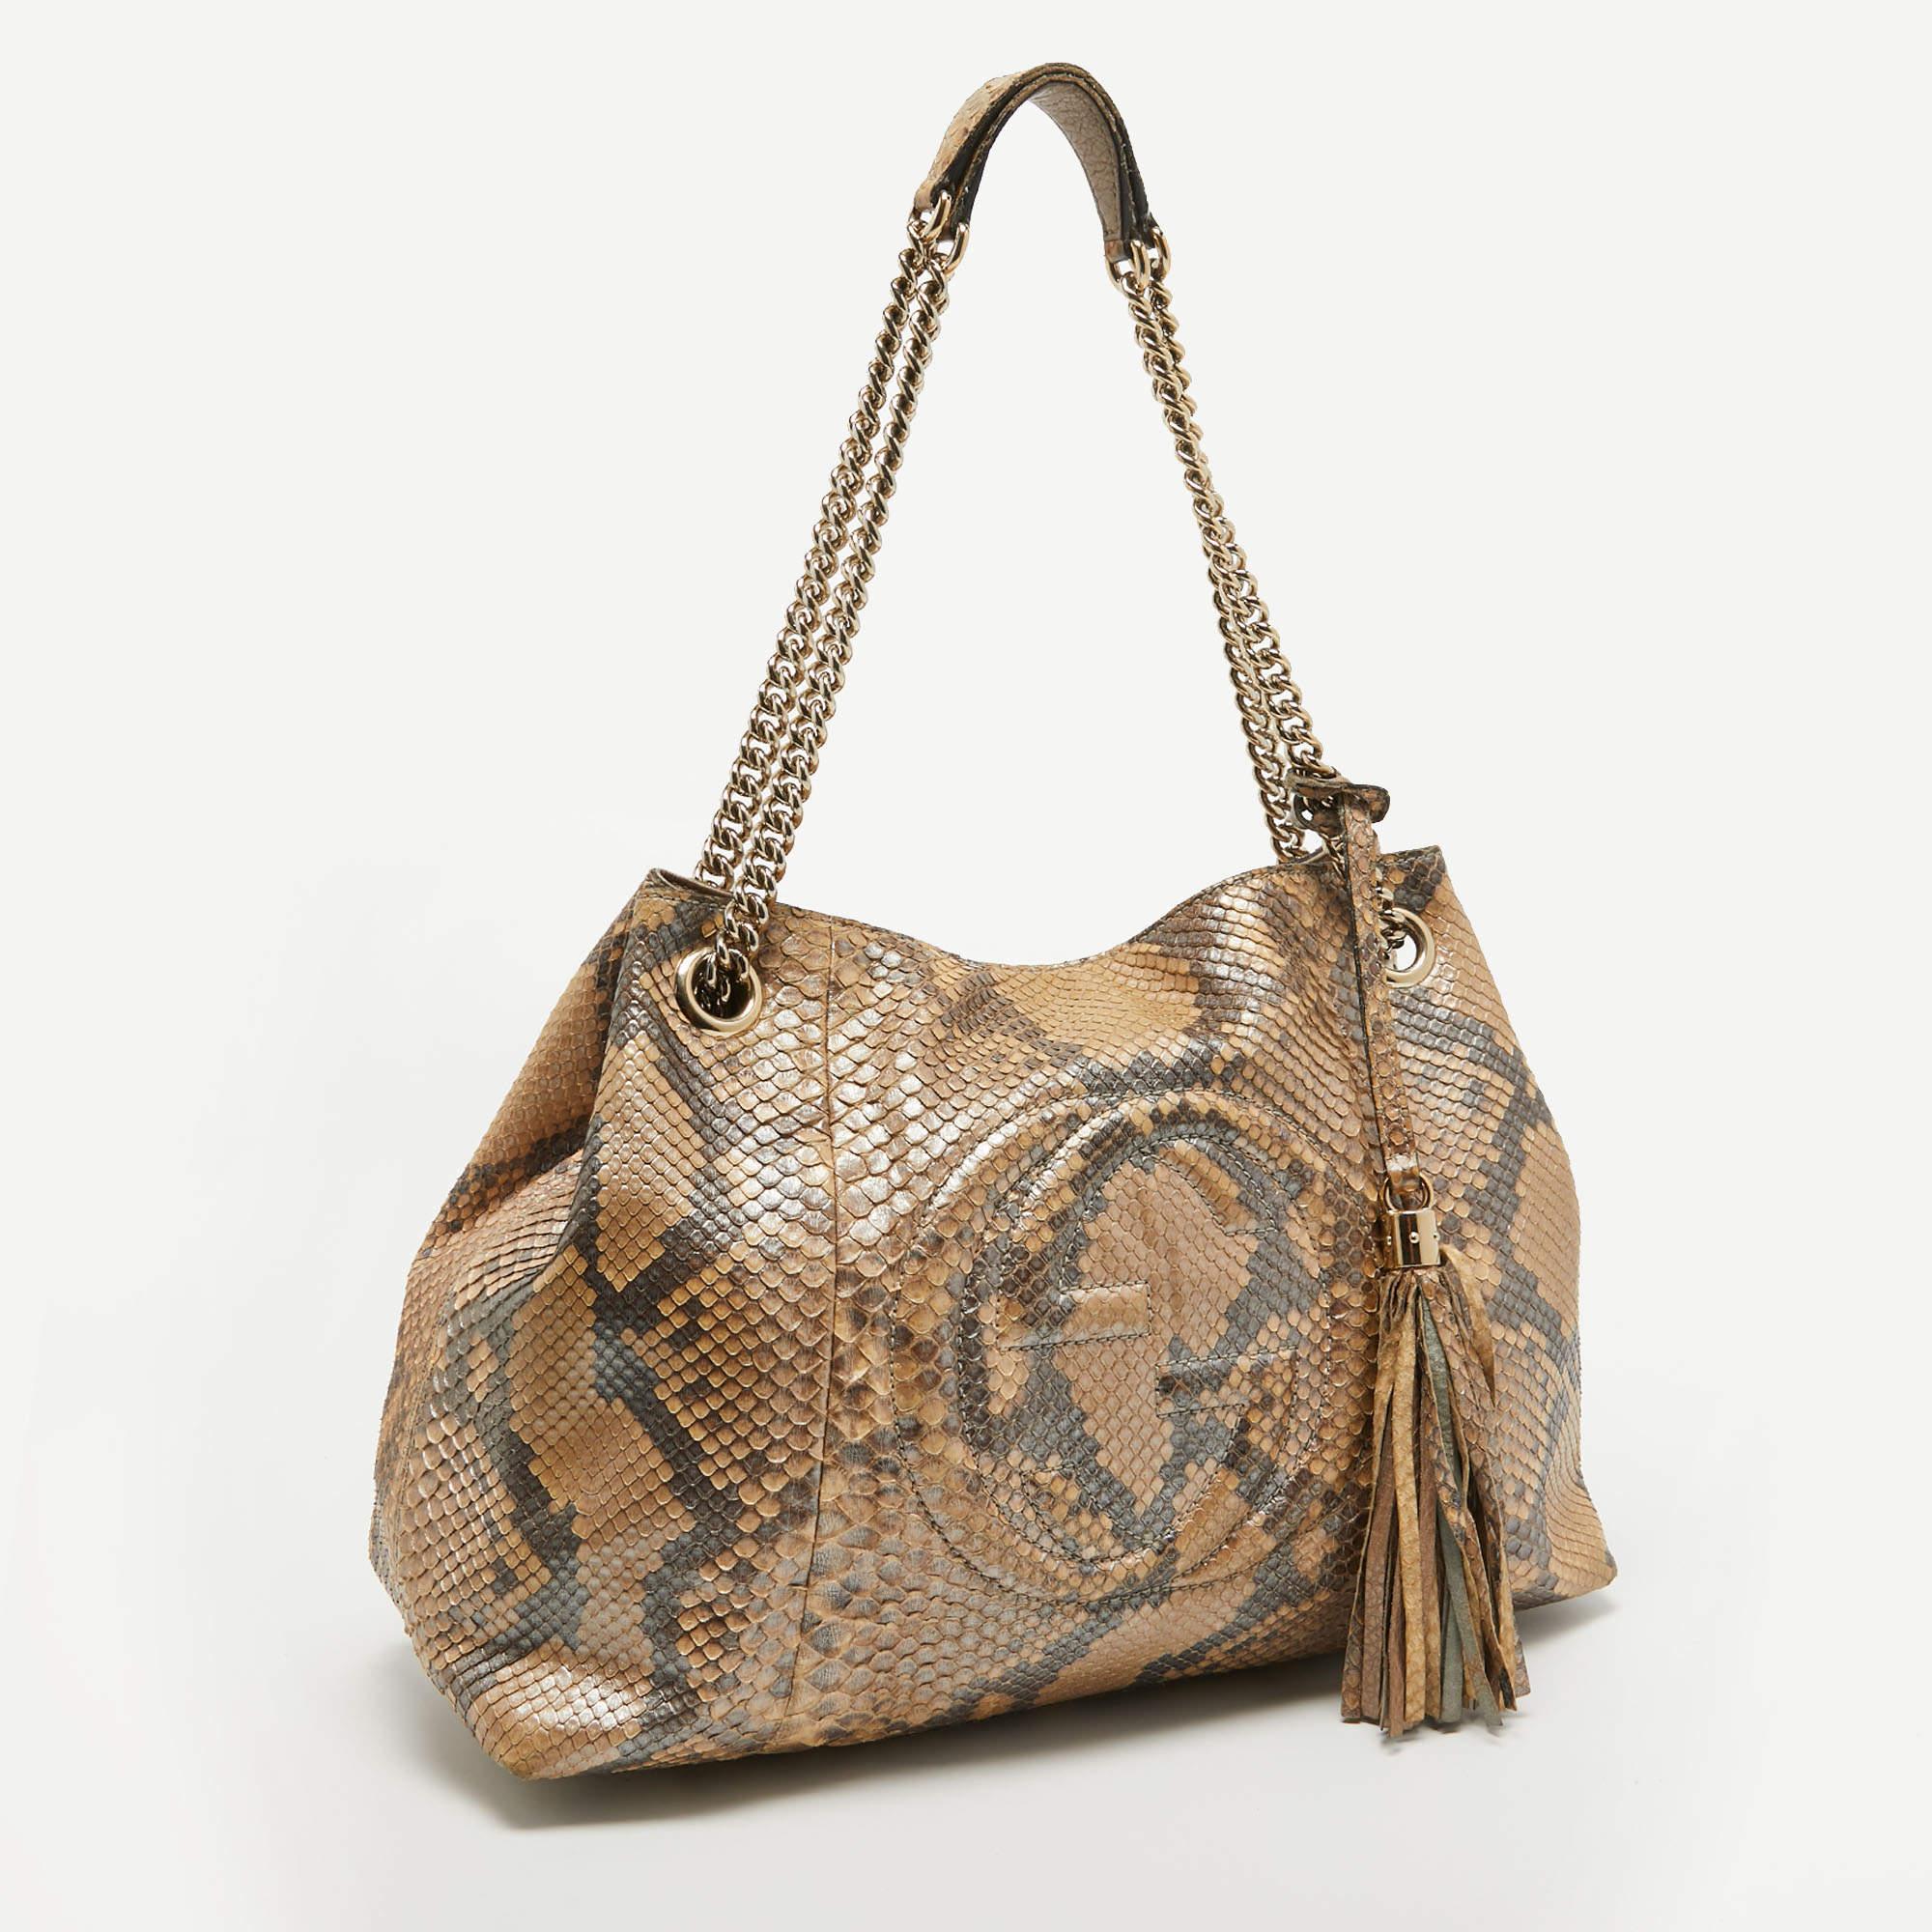 Des détails bien pensés, une qualité supérieure et une commodité quotidienne caractérisent ce sac de créateur pour femmes de Gucci. Le sac est cousu avec talent pour offrir un look raffiné et une finition impeccable.

